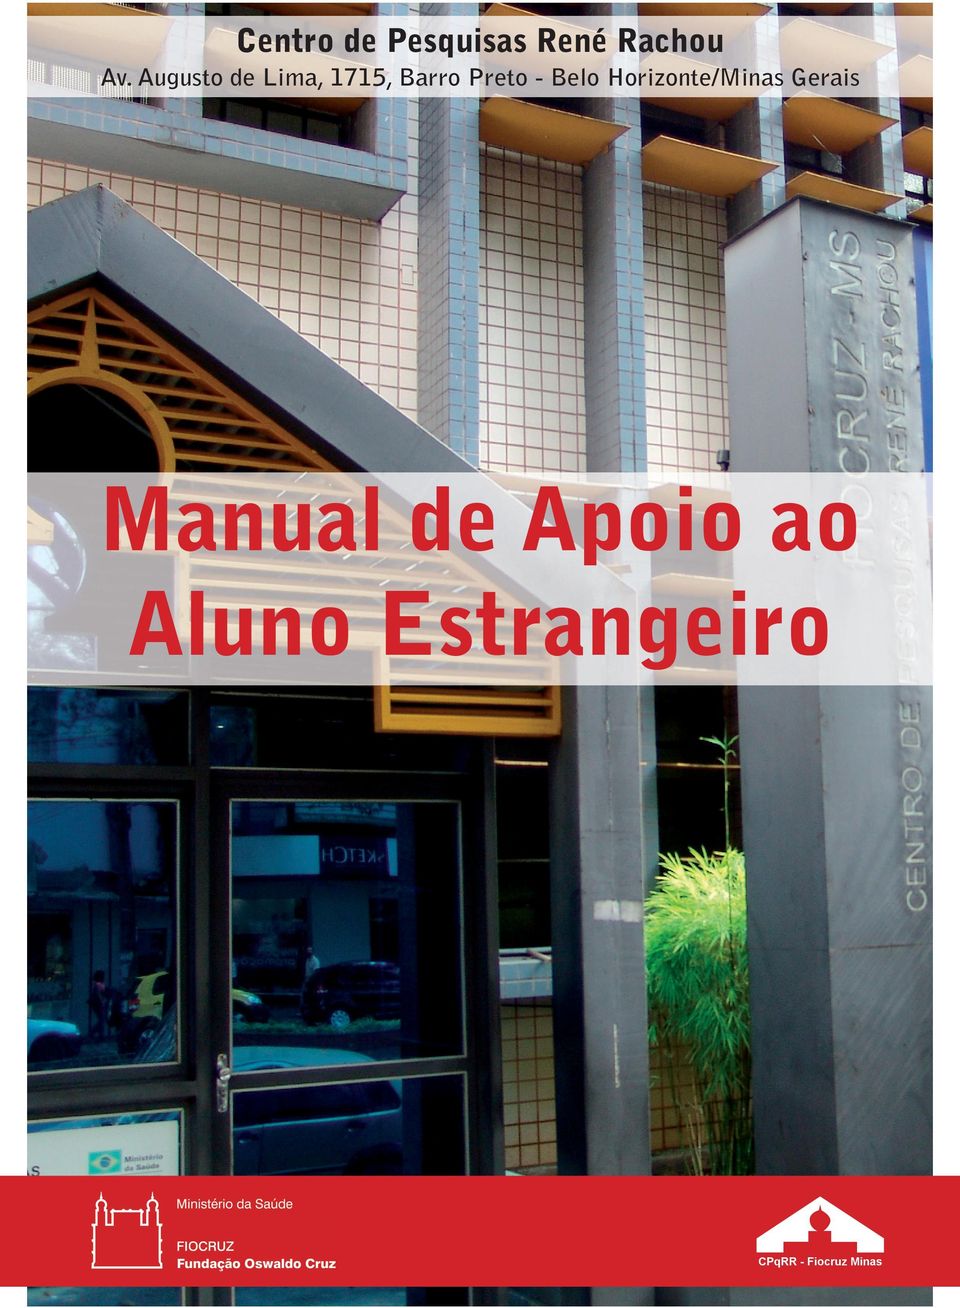 Belo Horizonte/Minas Gerais Manual de